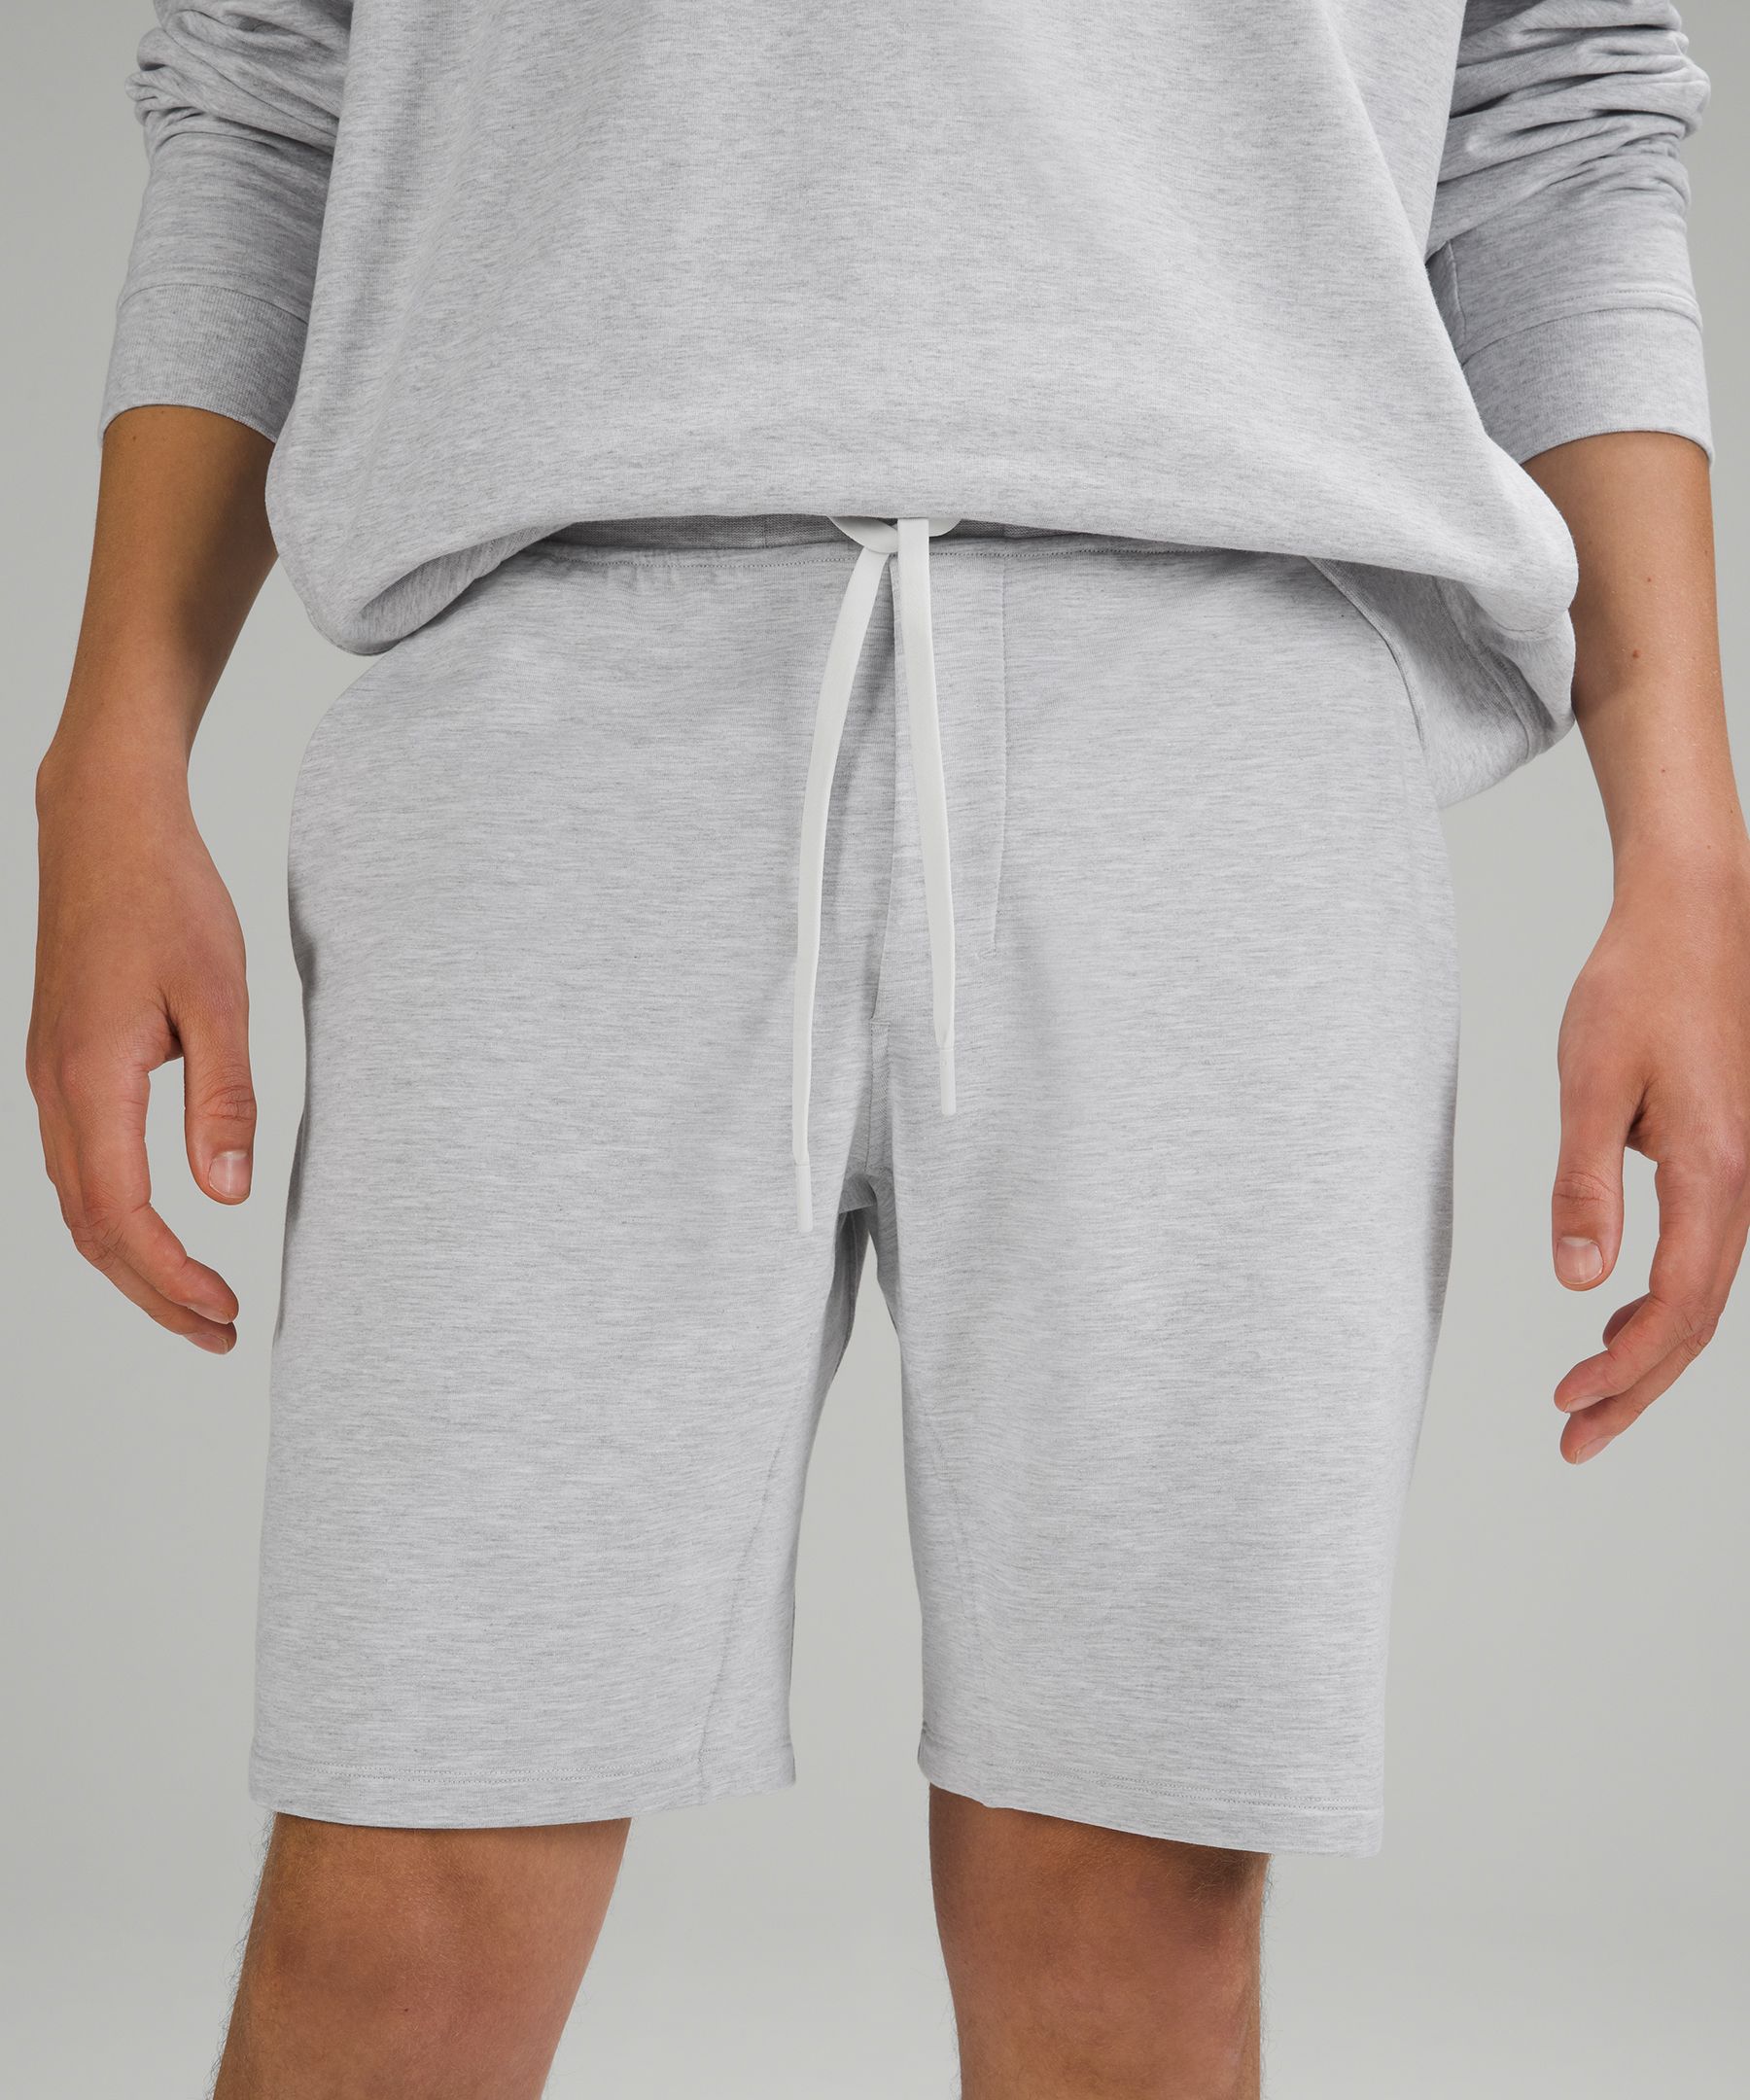 lululemon sweatpant shorts